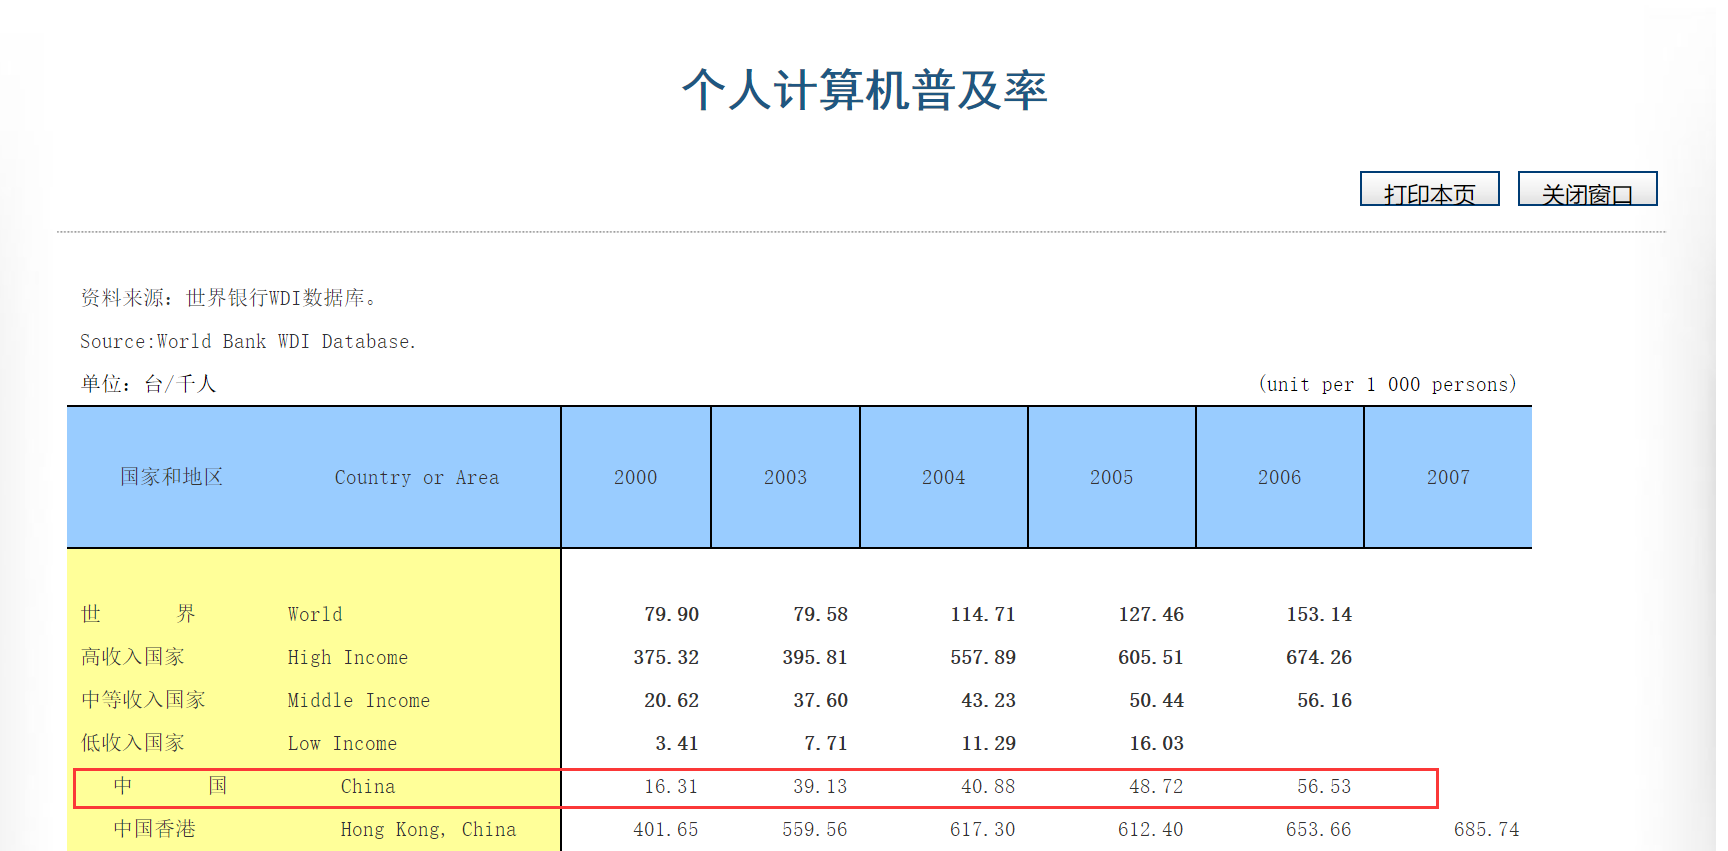 进入21世纪后中国电脑普及率迅速上升（图片来源：国际统计年鉴2009）